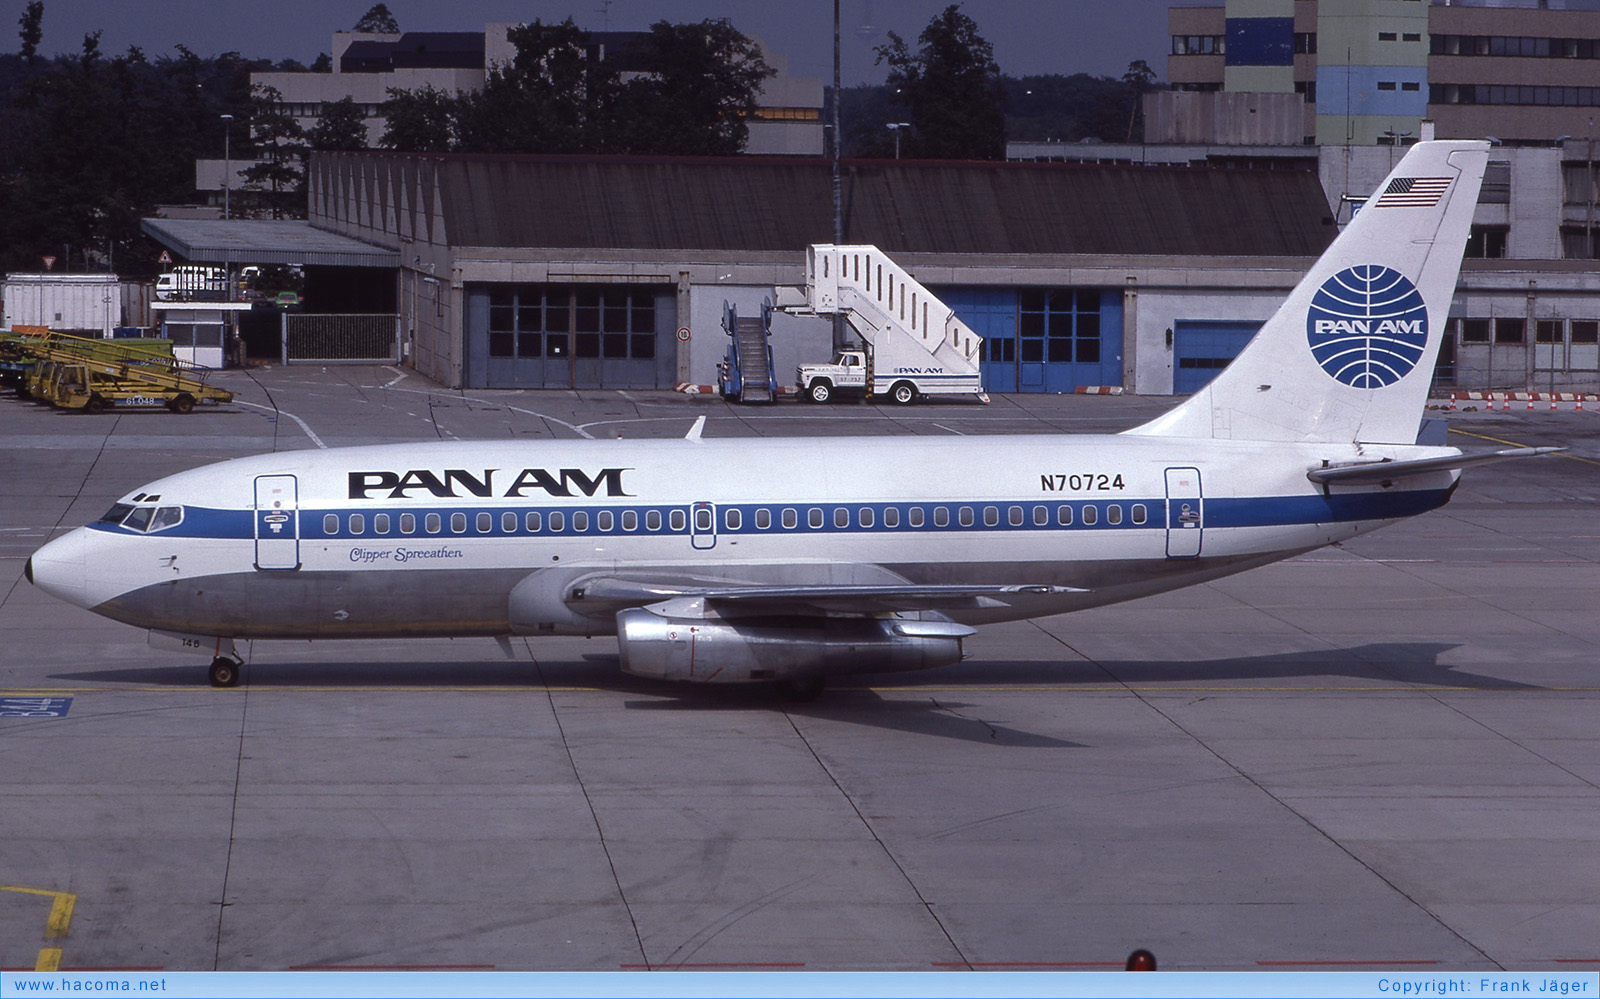 Foto von N70724 - Pan Am Clipper Spreeathen / Georgia - Flughafen Frankfurt am Main - 19.08.1984